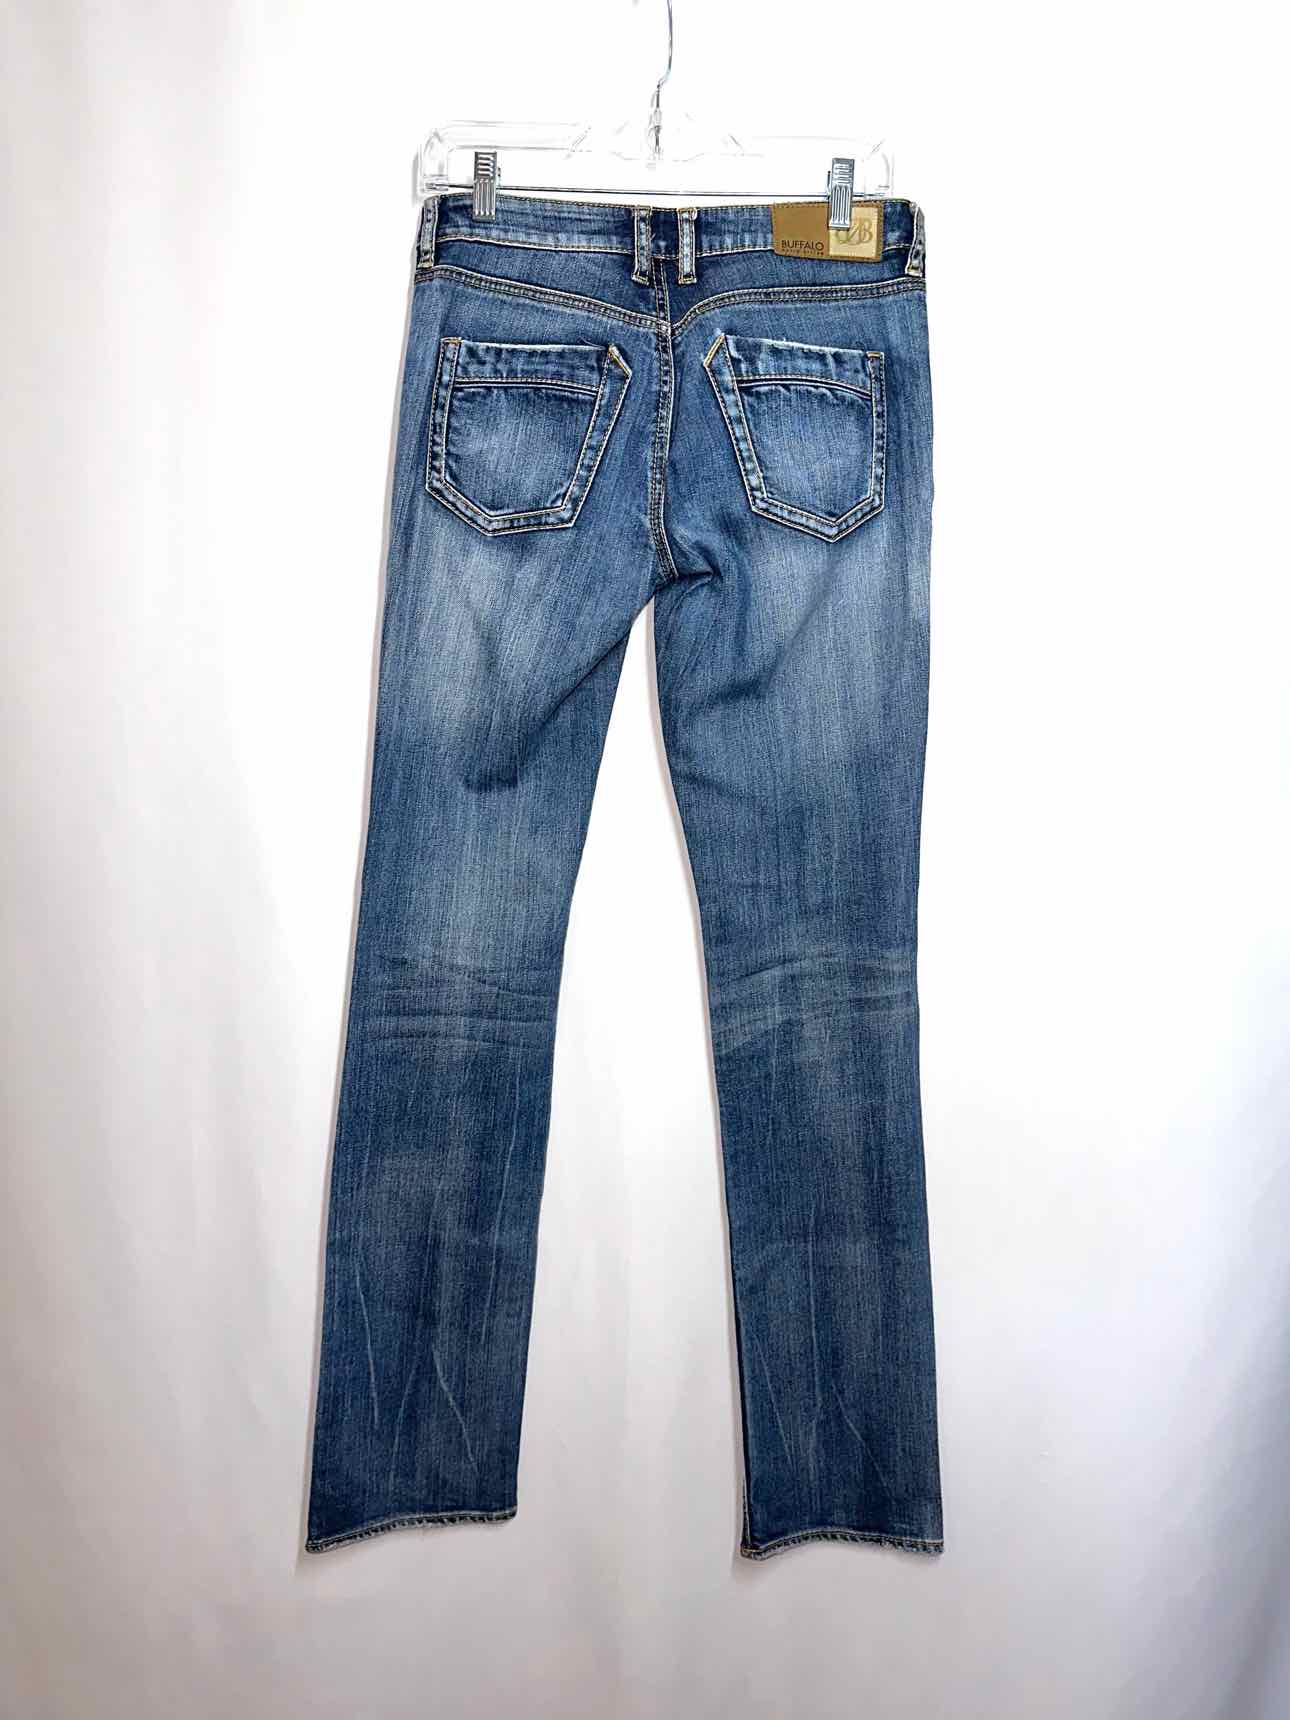 Buffalo David Britton Gitane Jeans Size 4